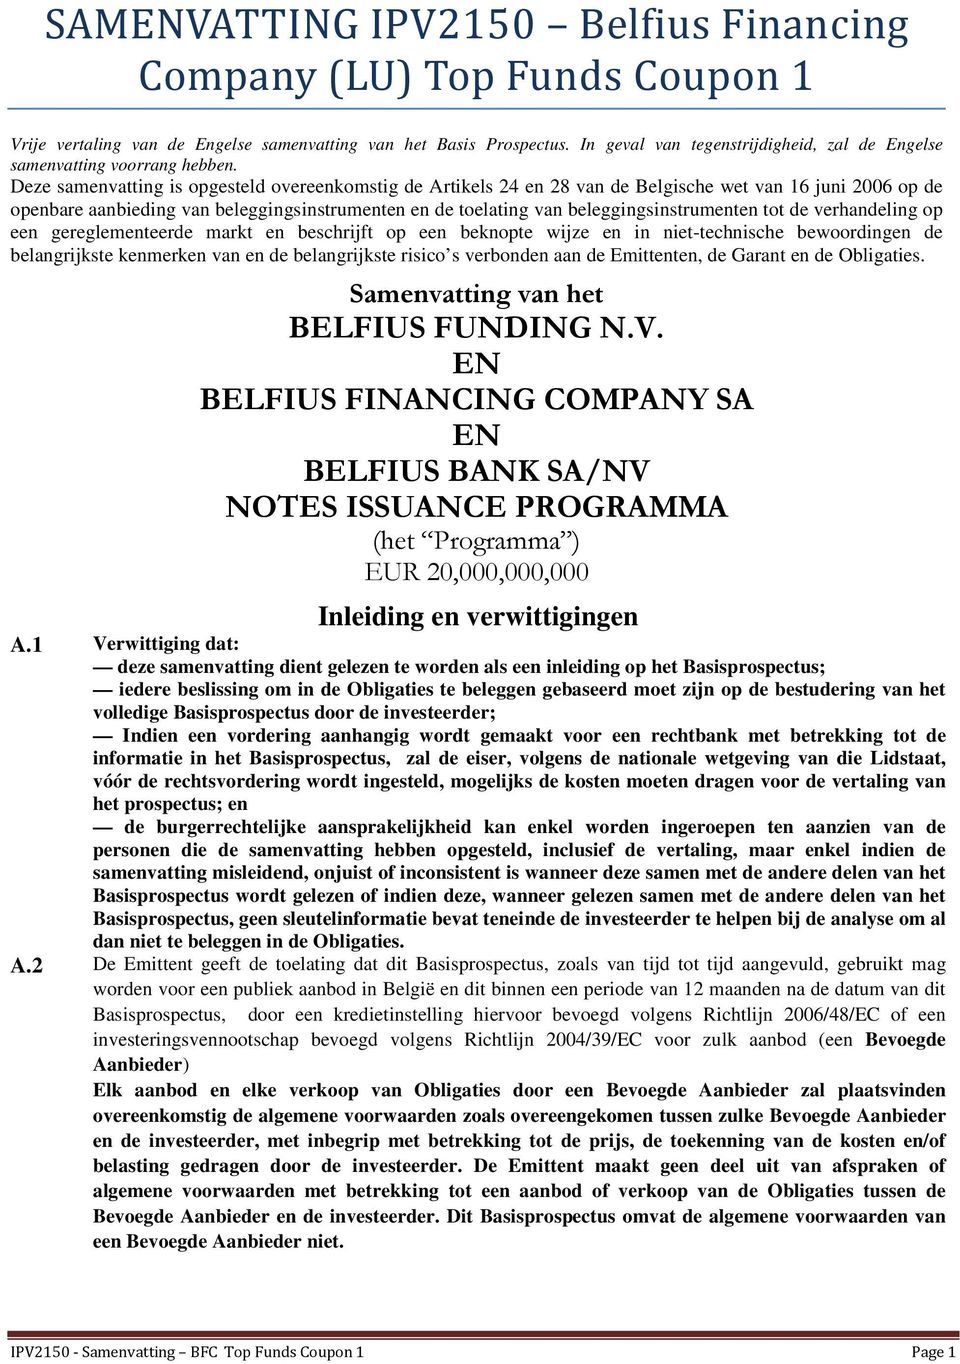 Deze samenvatting is opgesteld overeenkomstig de Artikels 24 en 28 van de Belgische wet van 16 juni 2006 op de openbare aanbieding van beleggingsinstrumenten en de toelating van